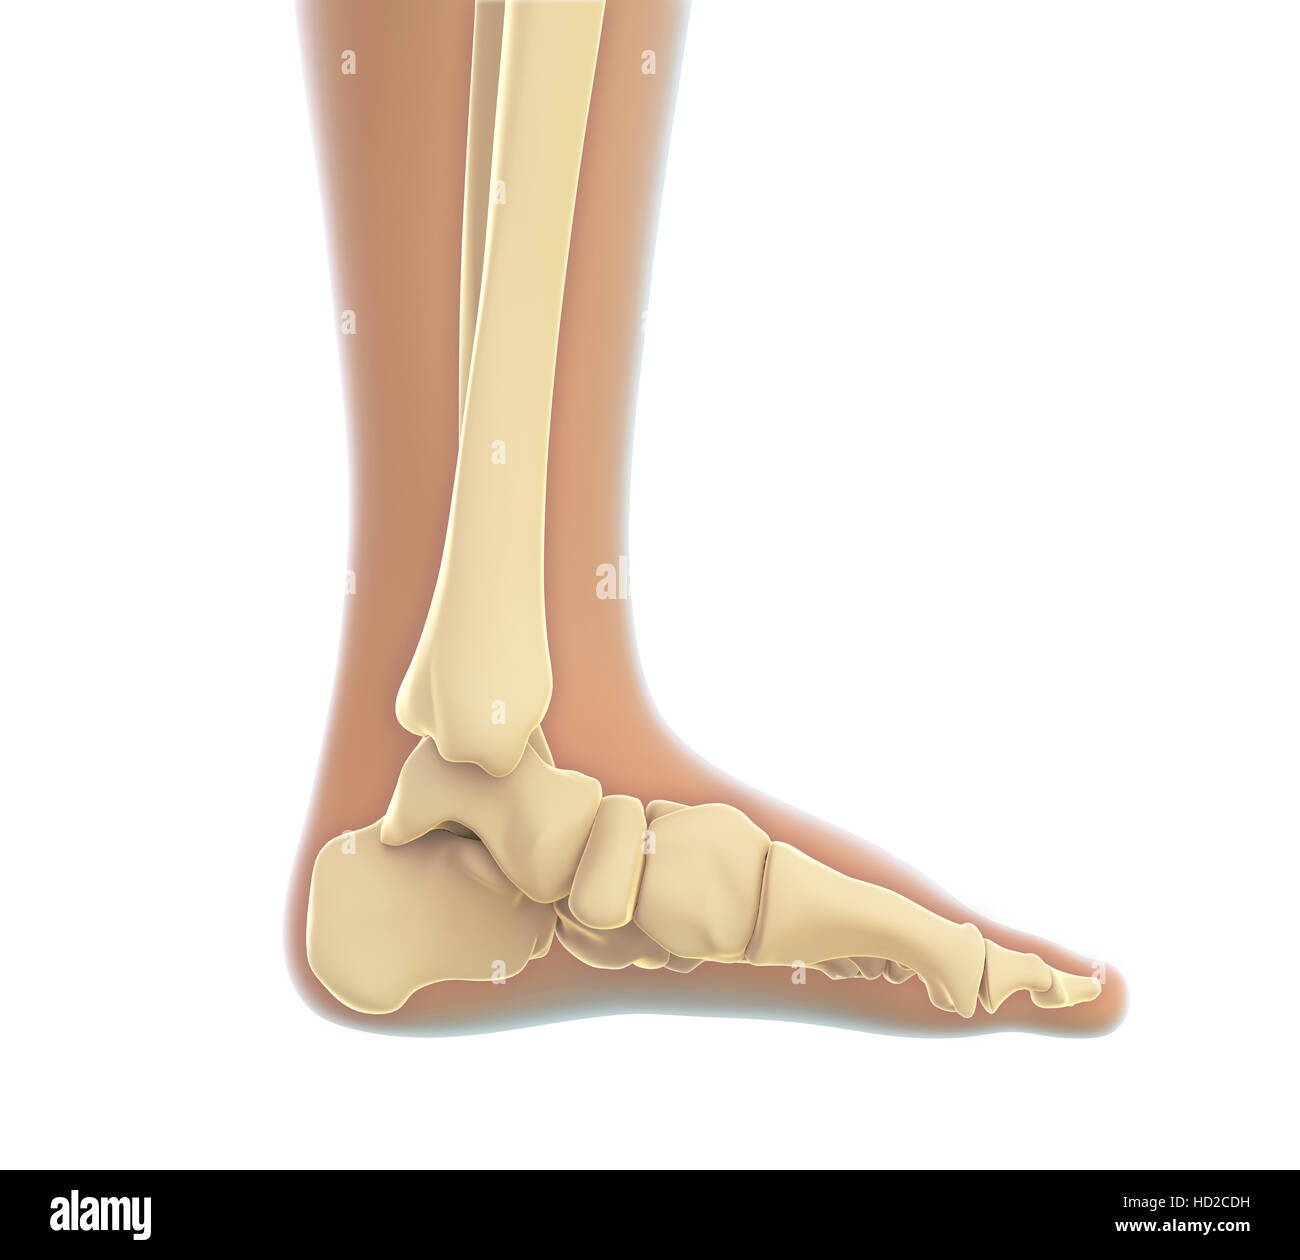 Anatomie du pied humain Banque D'Images